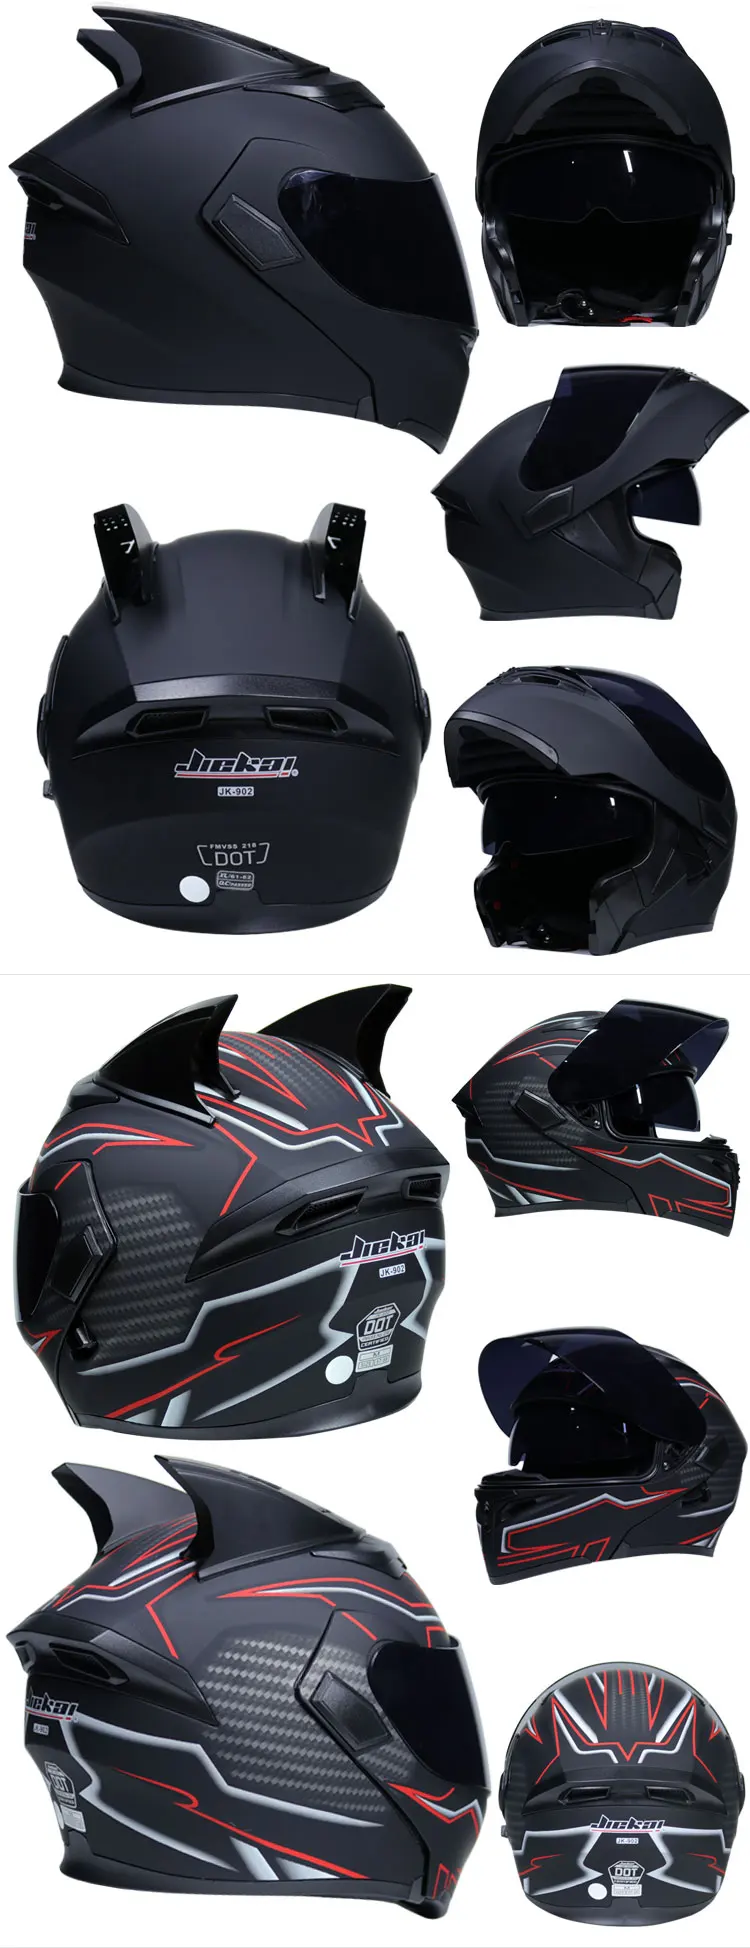 Мотоциклетный шлем, безопасный шлем для гоночного мотокросса, квадроцикл, мотоциклетный шлем в горошек, одобренный шлем, мотоциклетный шлем, мотоциклетный шлем